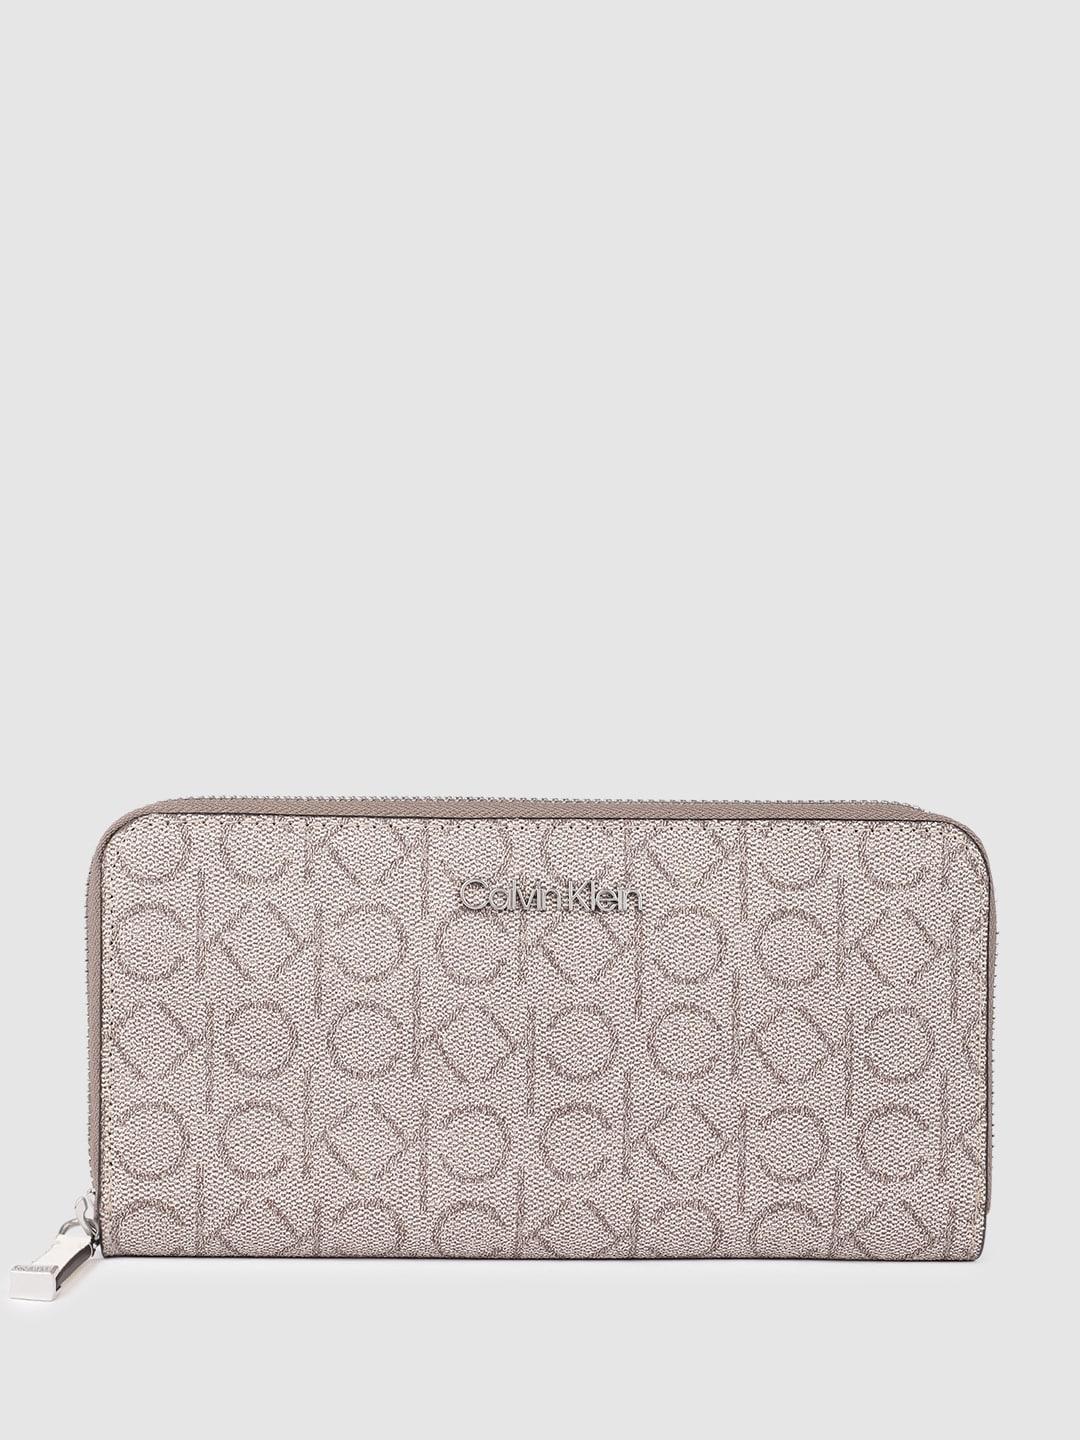 calvin klein women brand logo print & textured zip around wallet